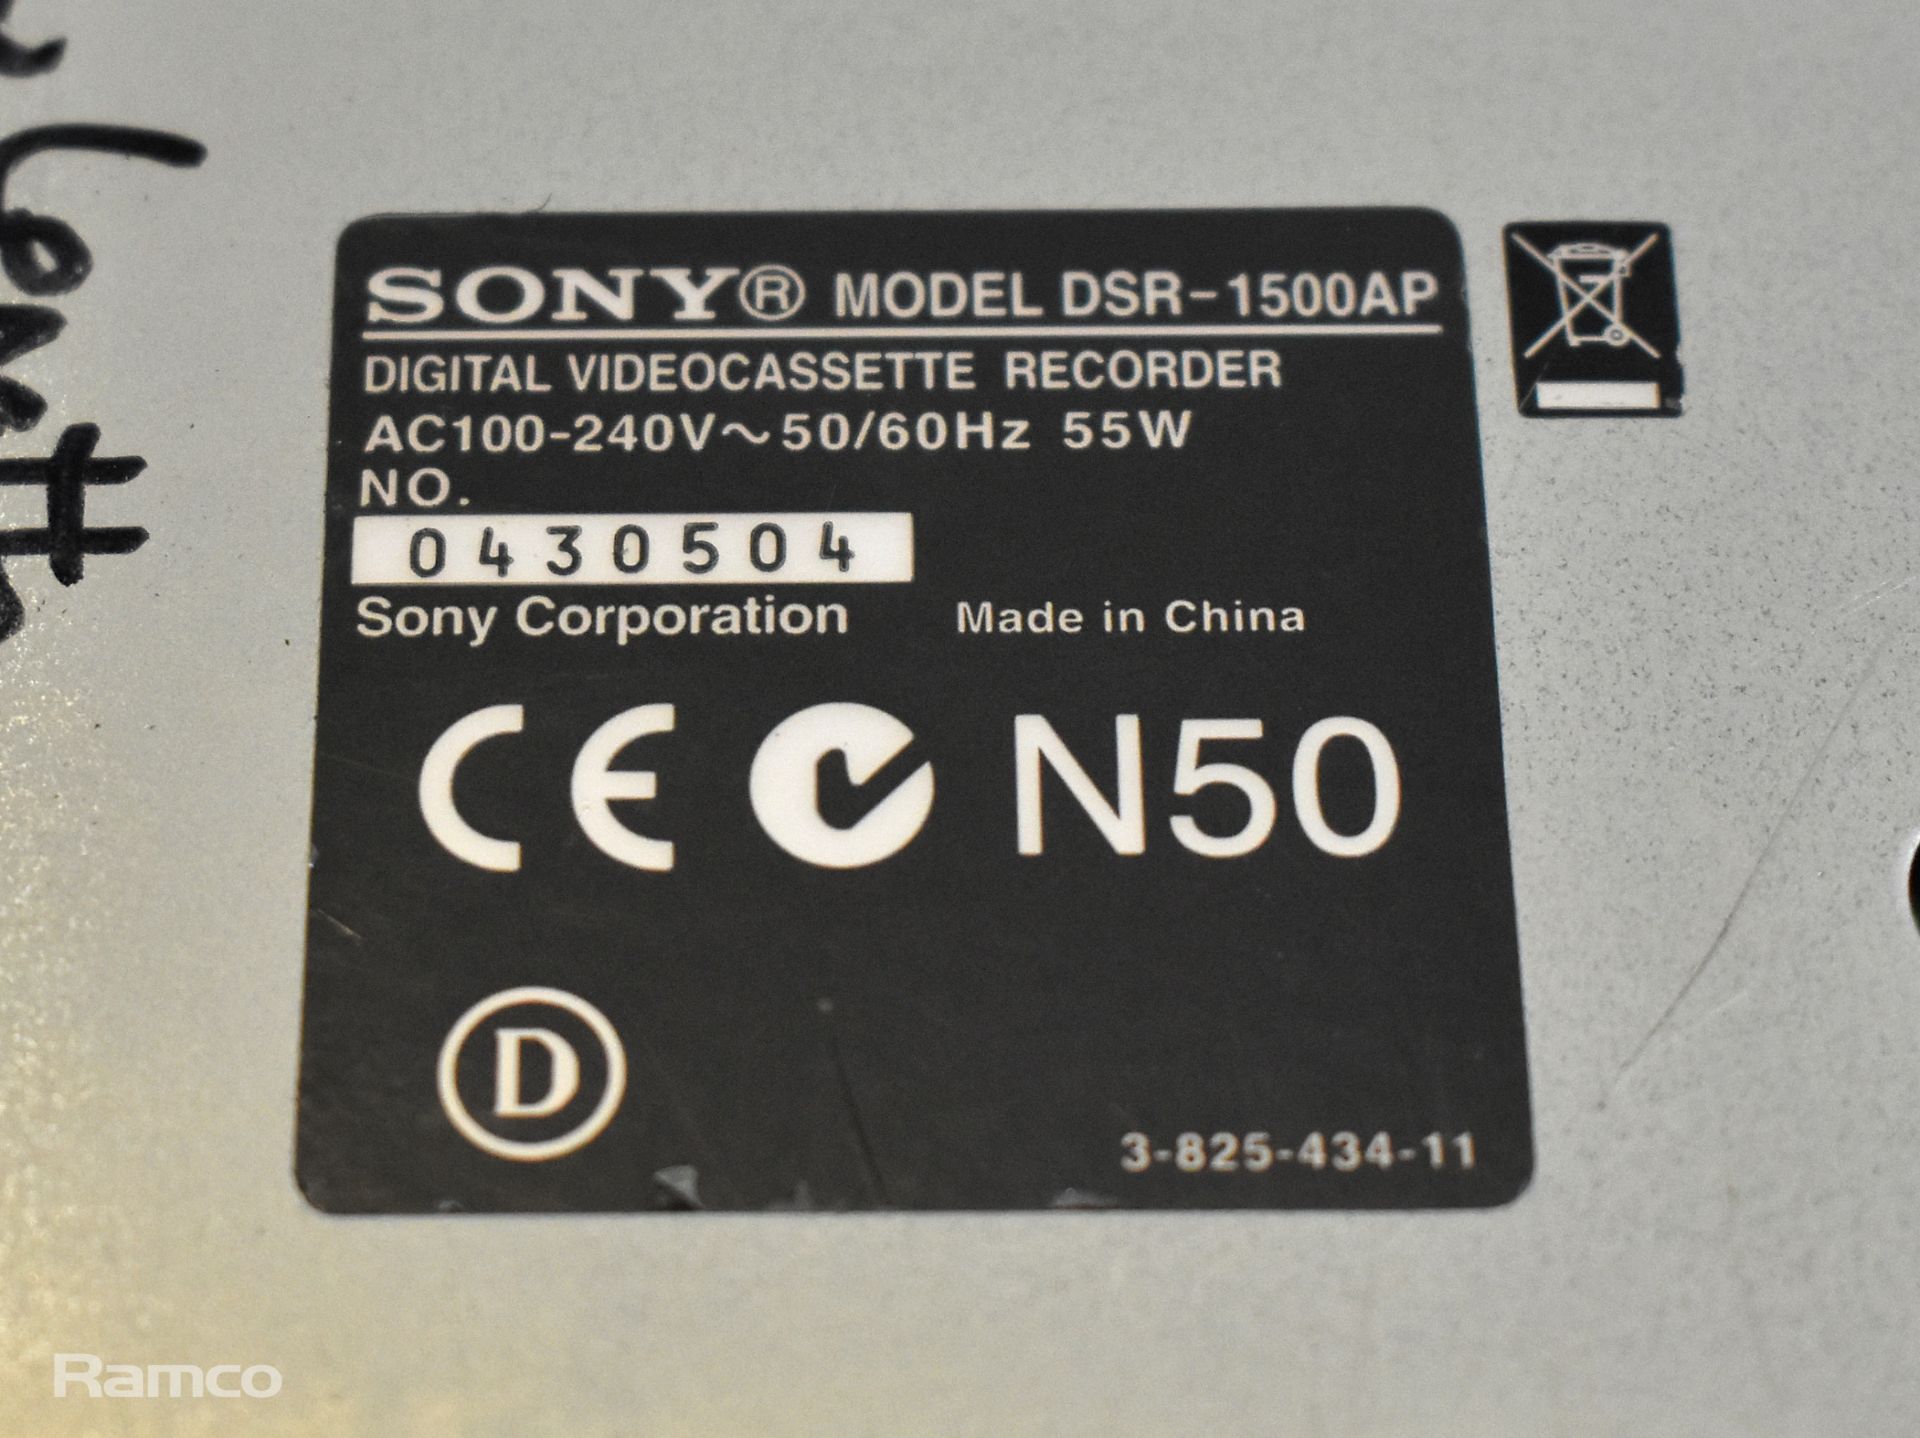 Sony DSR-25 DVCam digital videocassette recorder, Sony DSR-1500AP DVCam digital videocassette record - Image 5 of 7